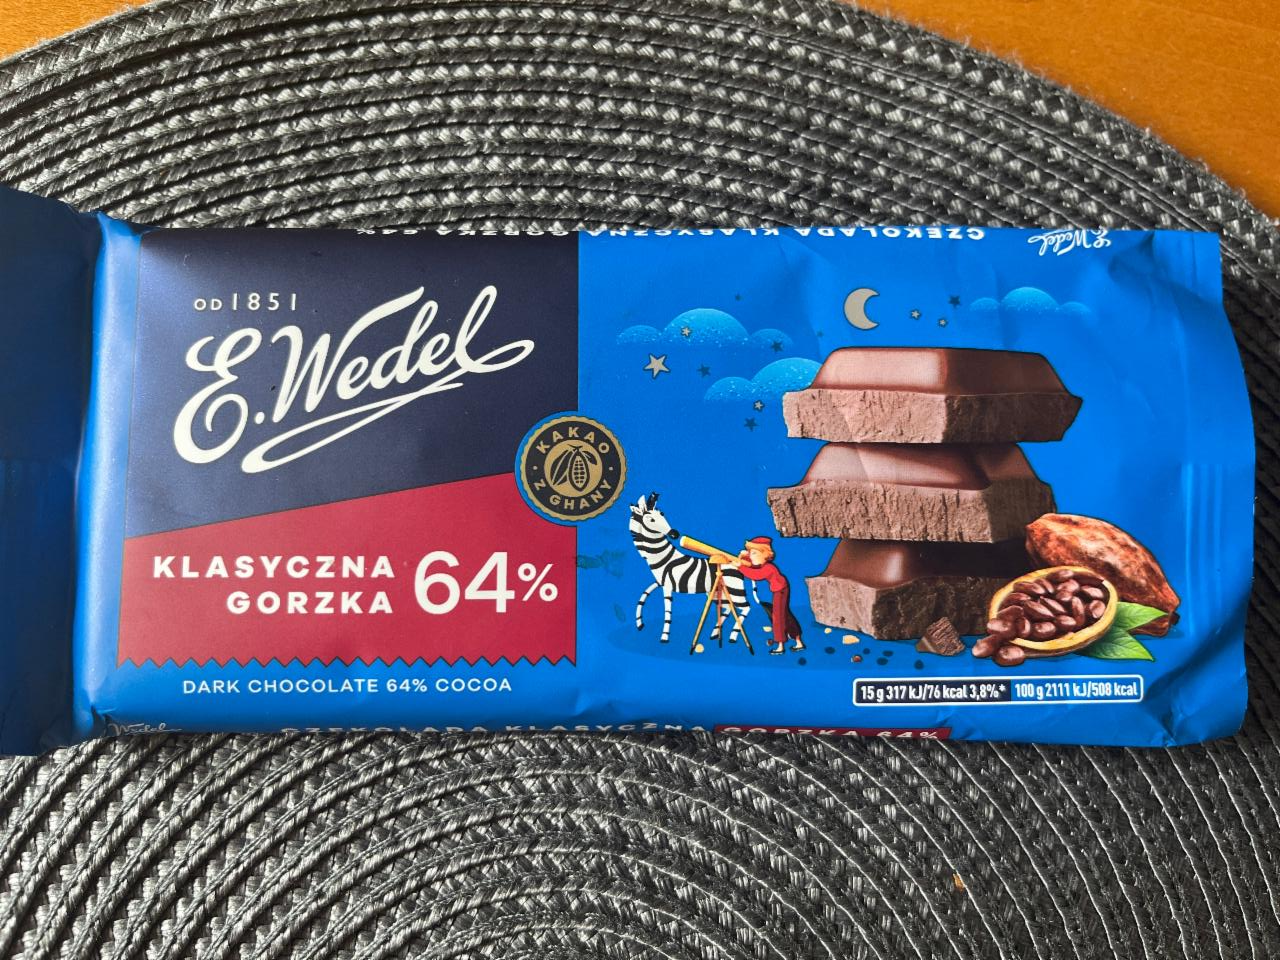 Фото - Шоколад классический темный Czekolada klasyczna gorzka 64% E.Wedel